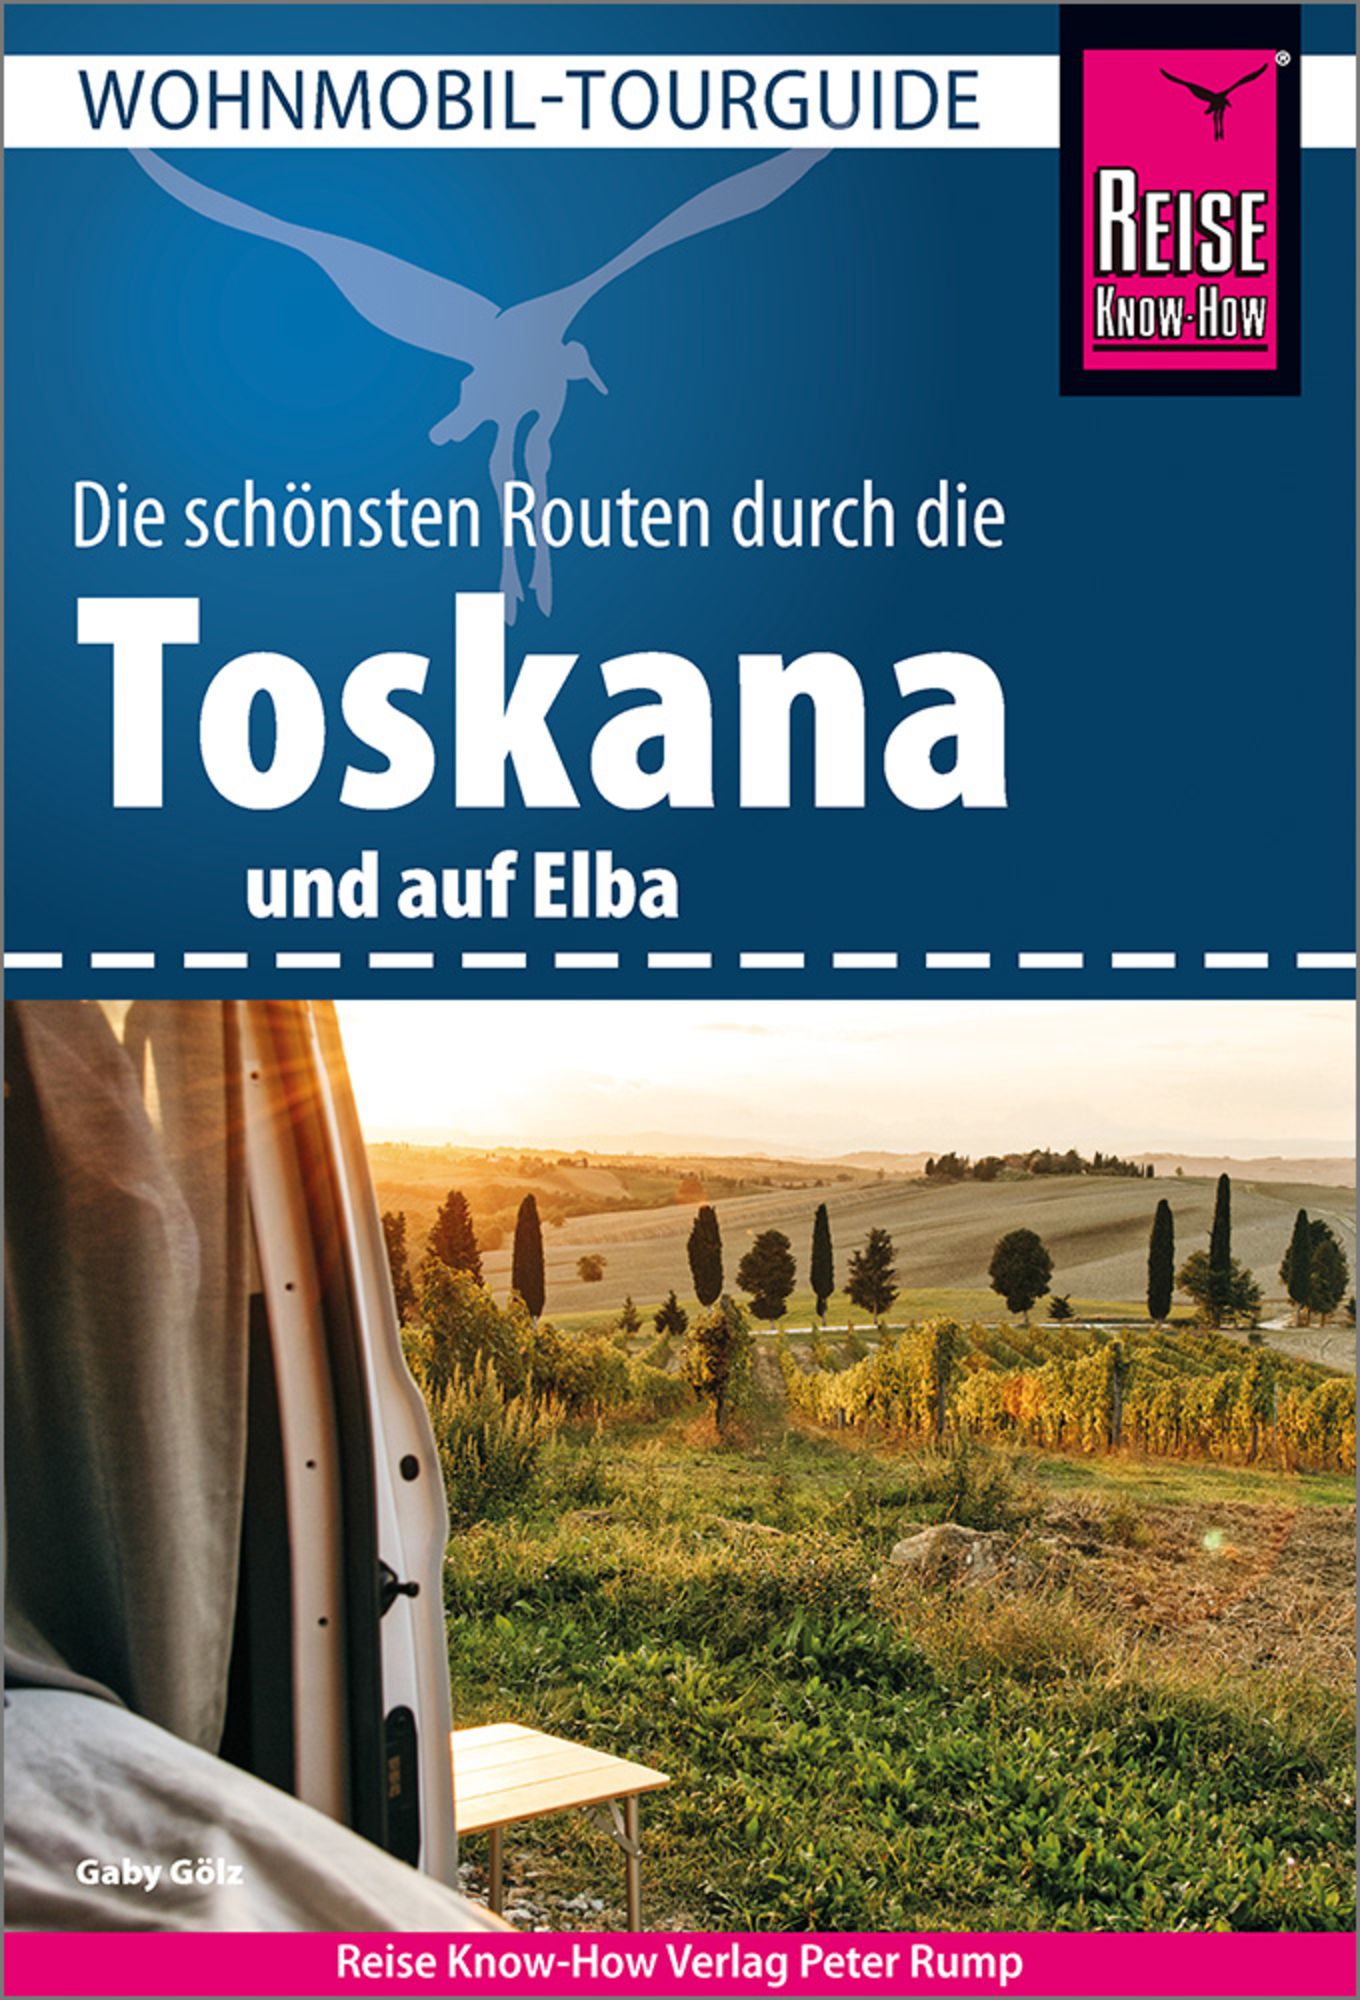 Reise Know-How Wohnmobil-Tourguide Toskana und Elba' von 'Gaby Gölz' - Buch  - '978-3-8317-3607-2